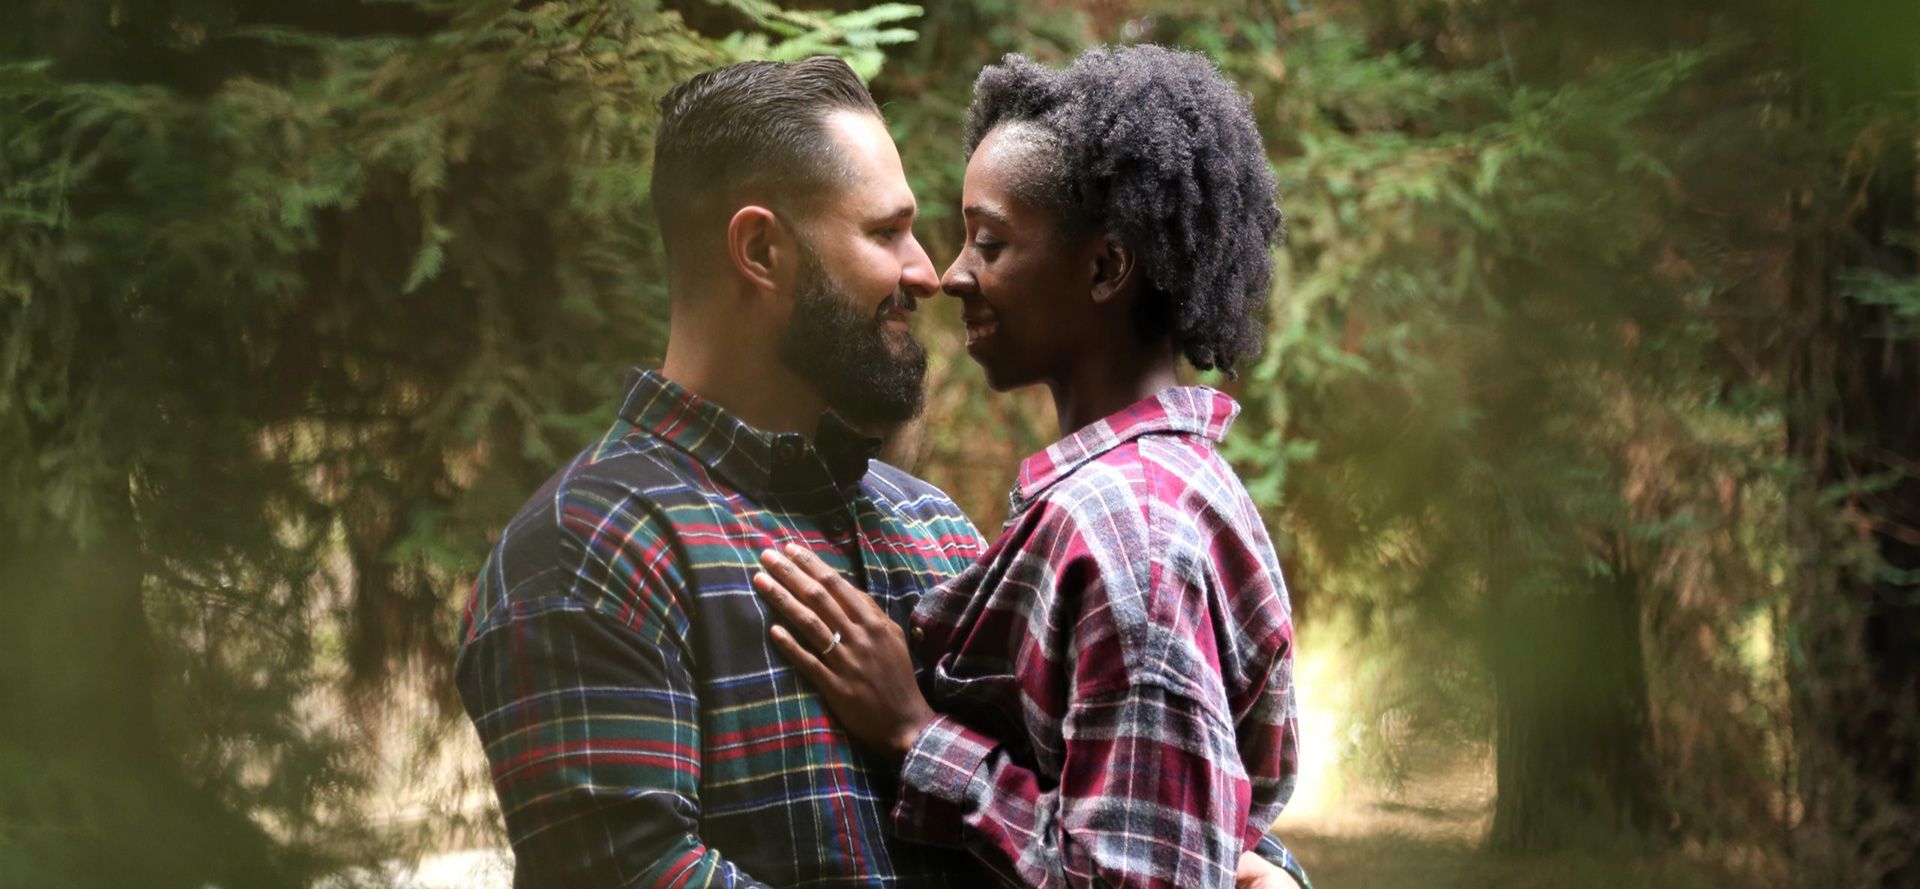 Weißer Mann und schwarze Frau bei einem Date im Wald.